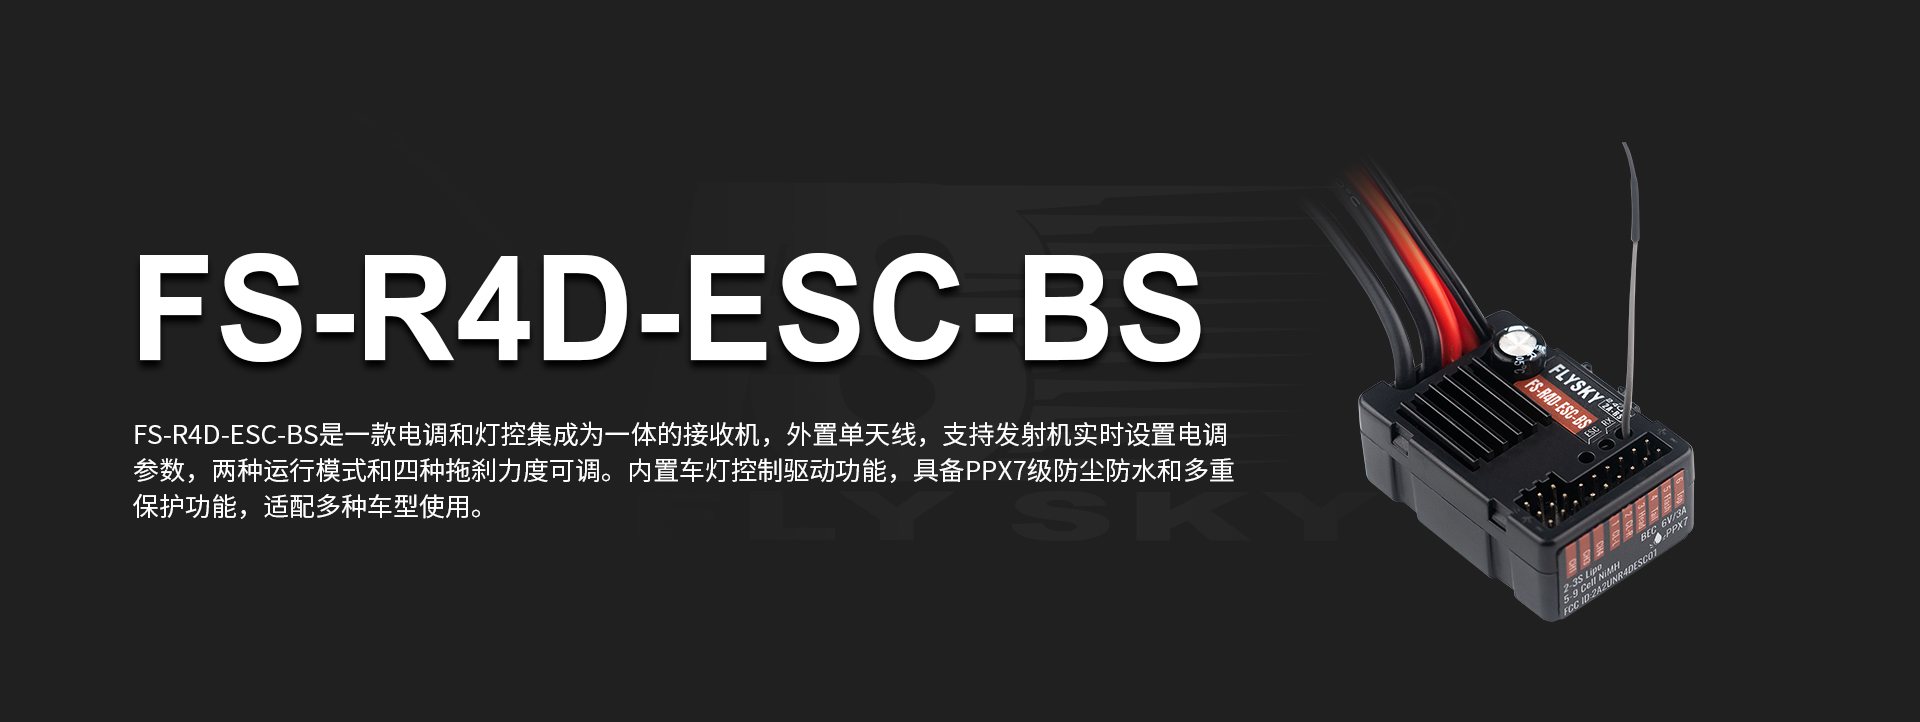 FS-R4D-ESC-BS